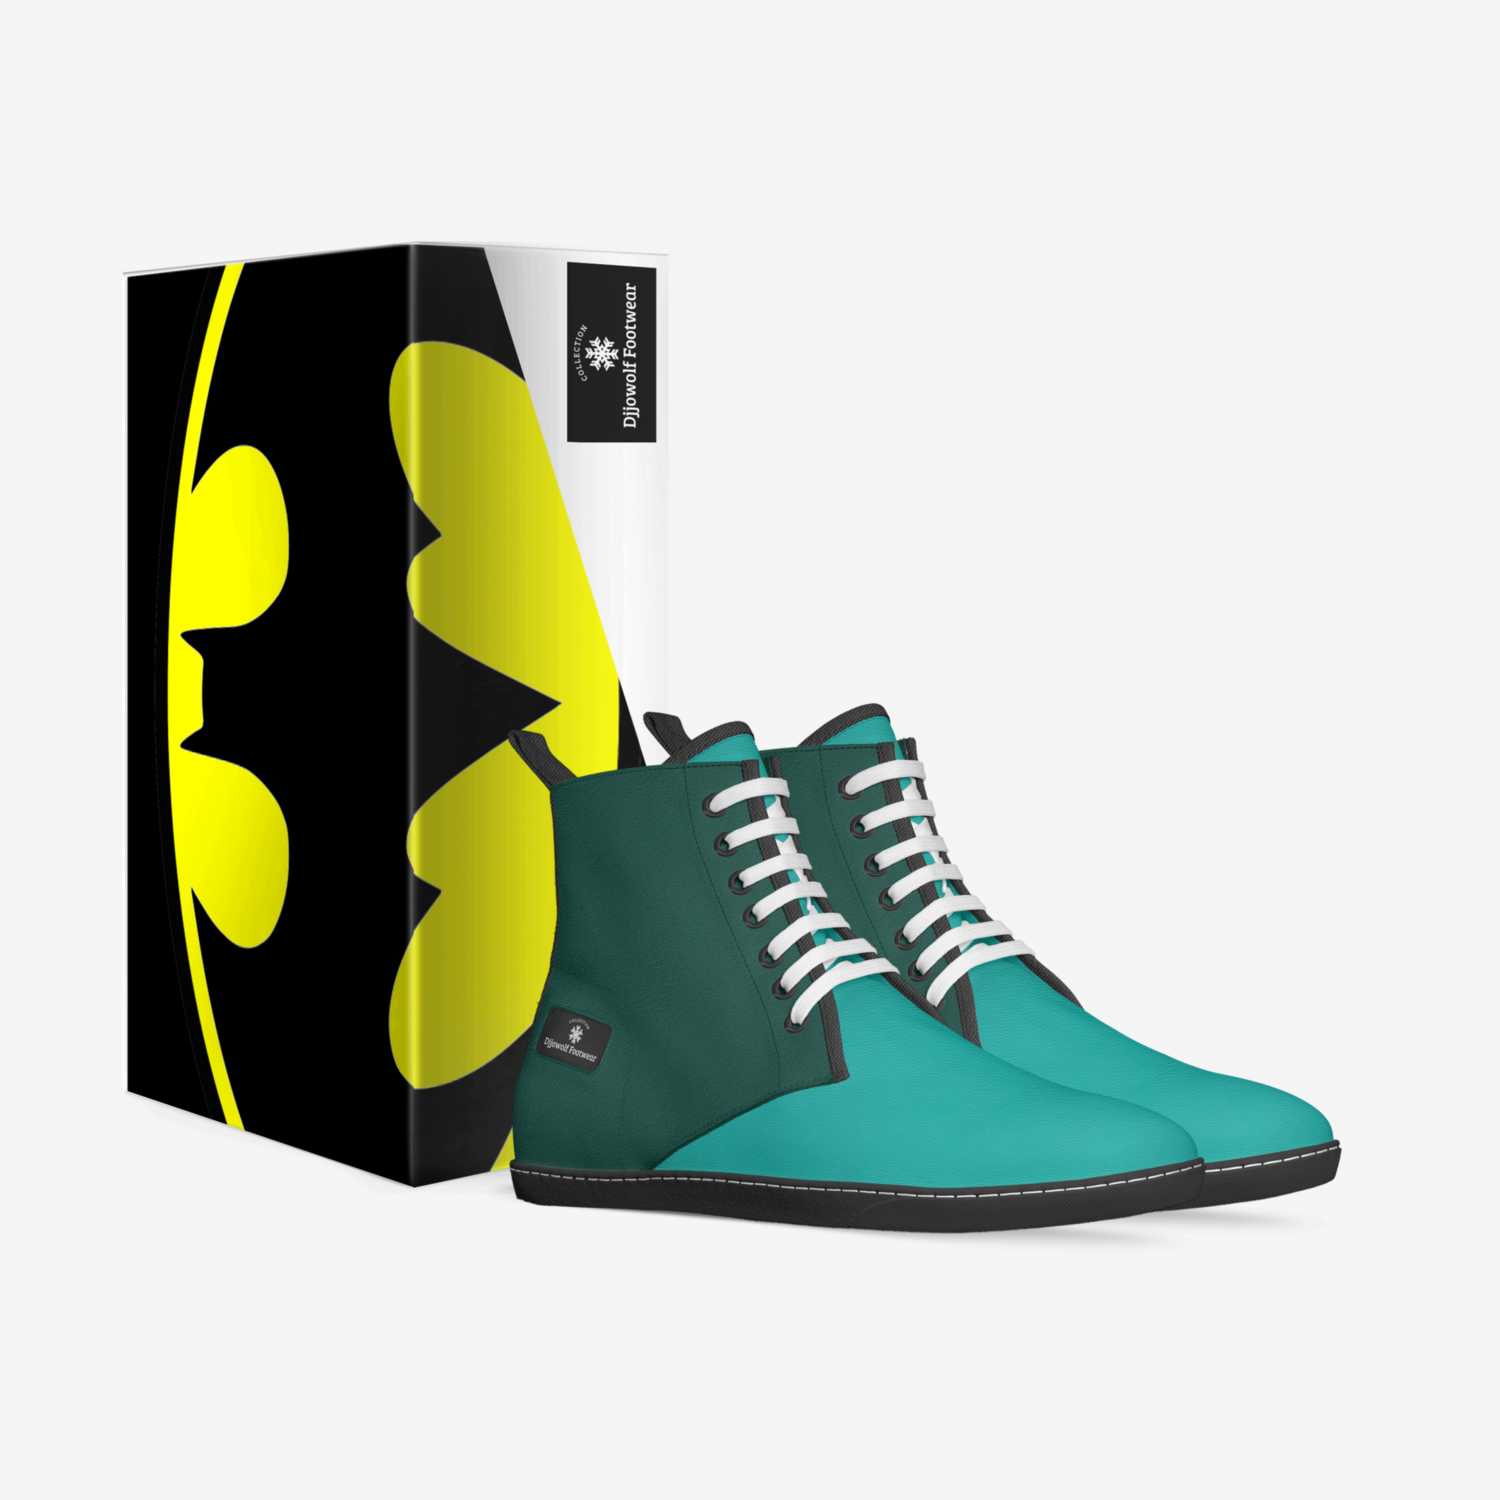 Djjowolf Footwear custom made in Italy shoes by Jocelyn E. Dalton | Box view